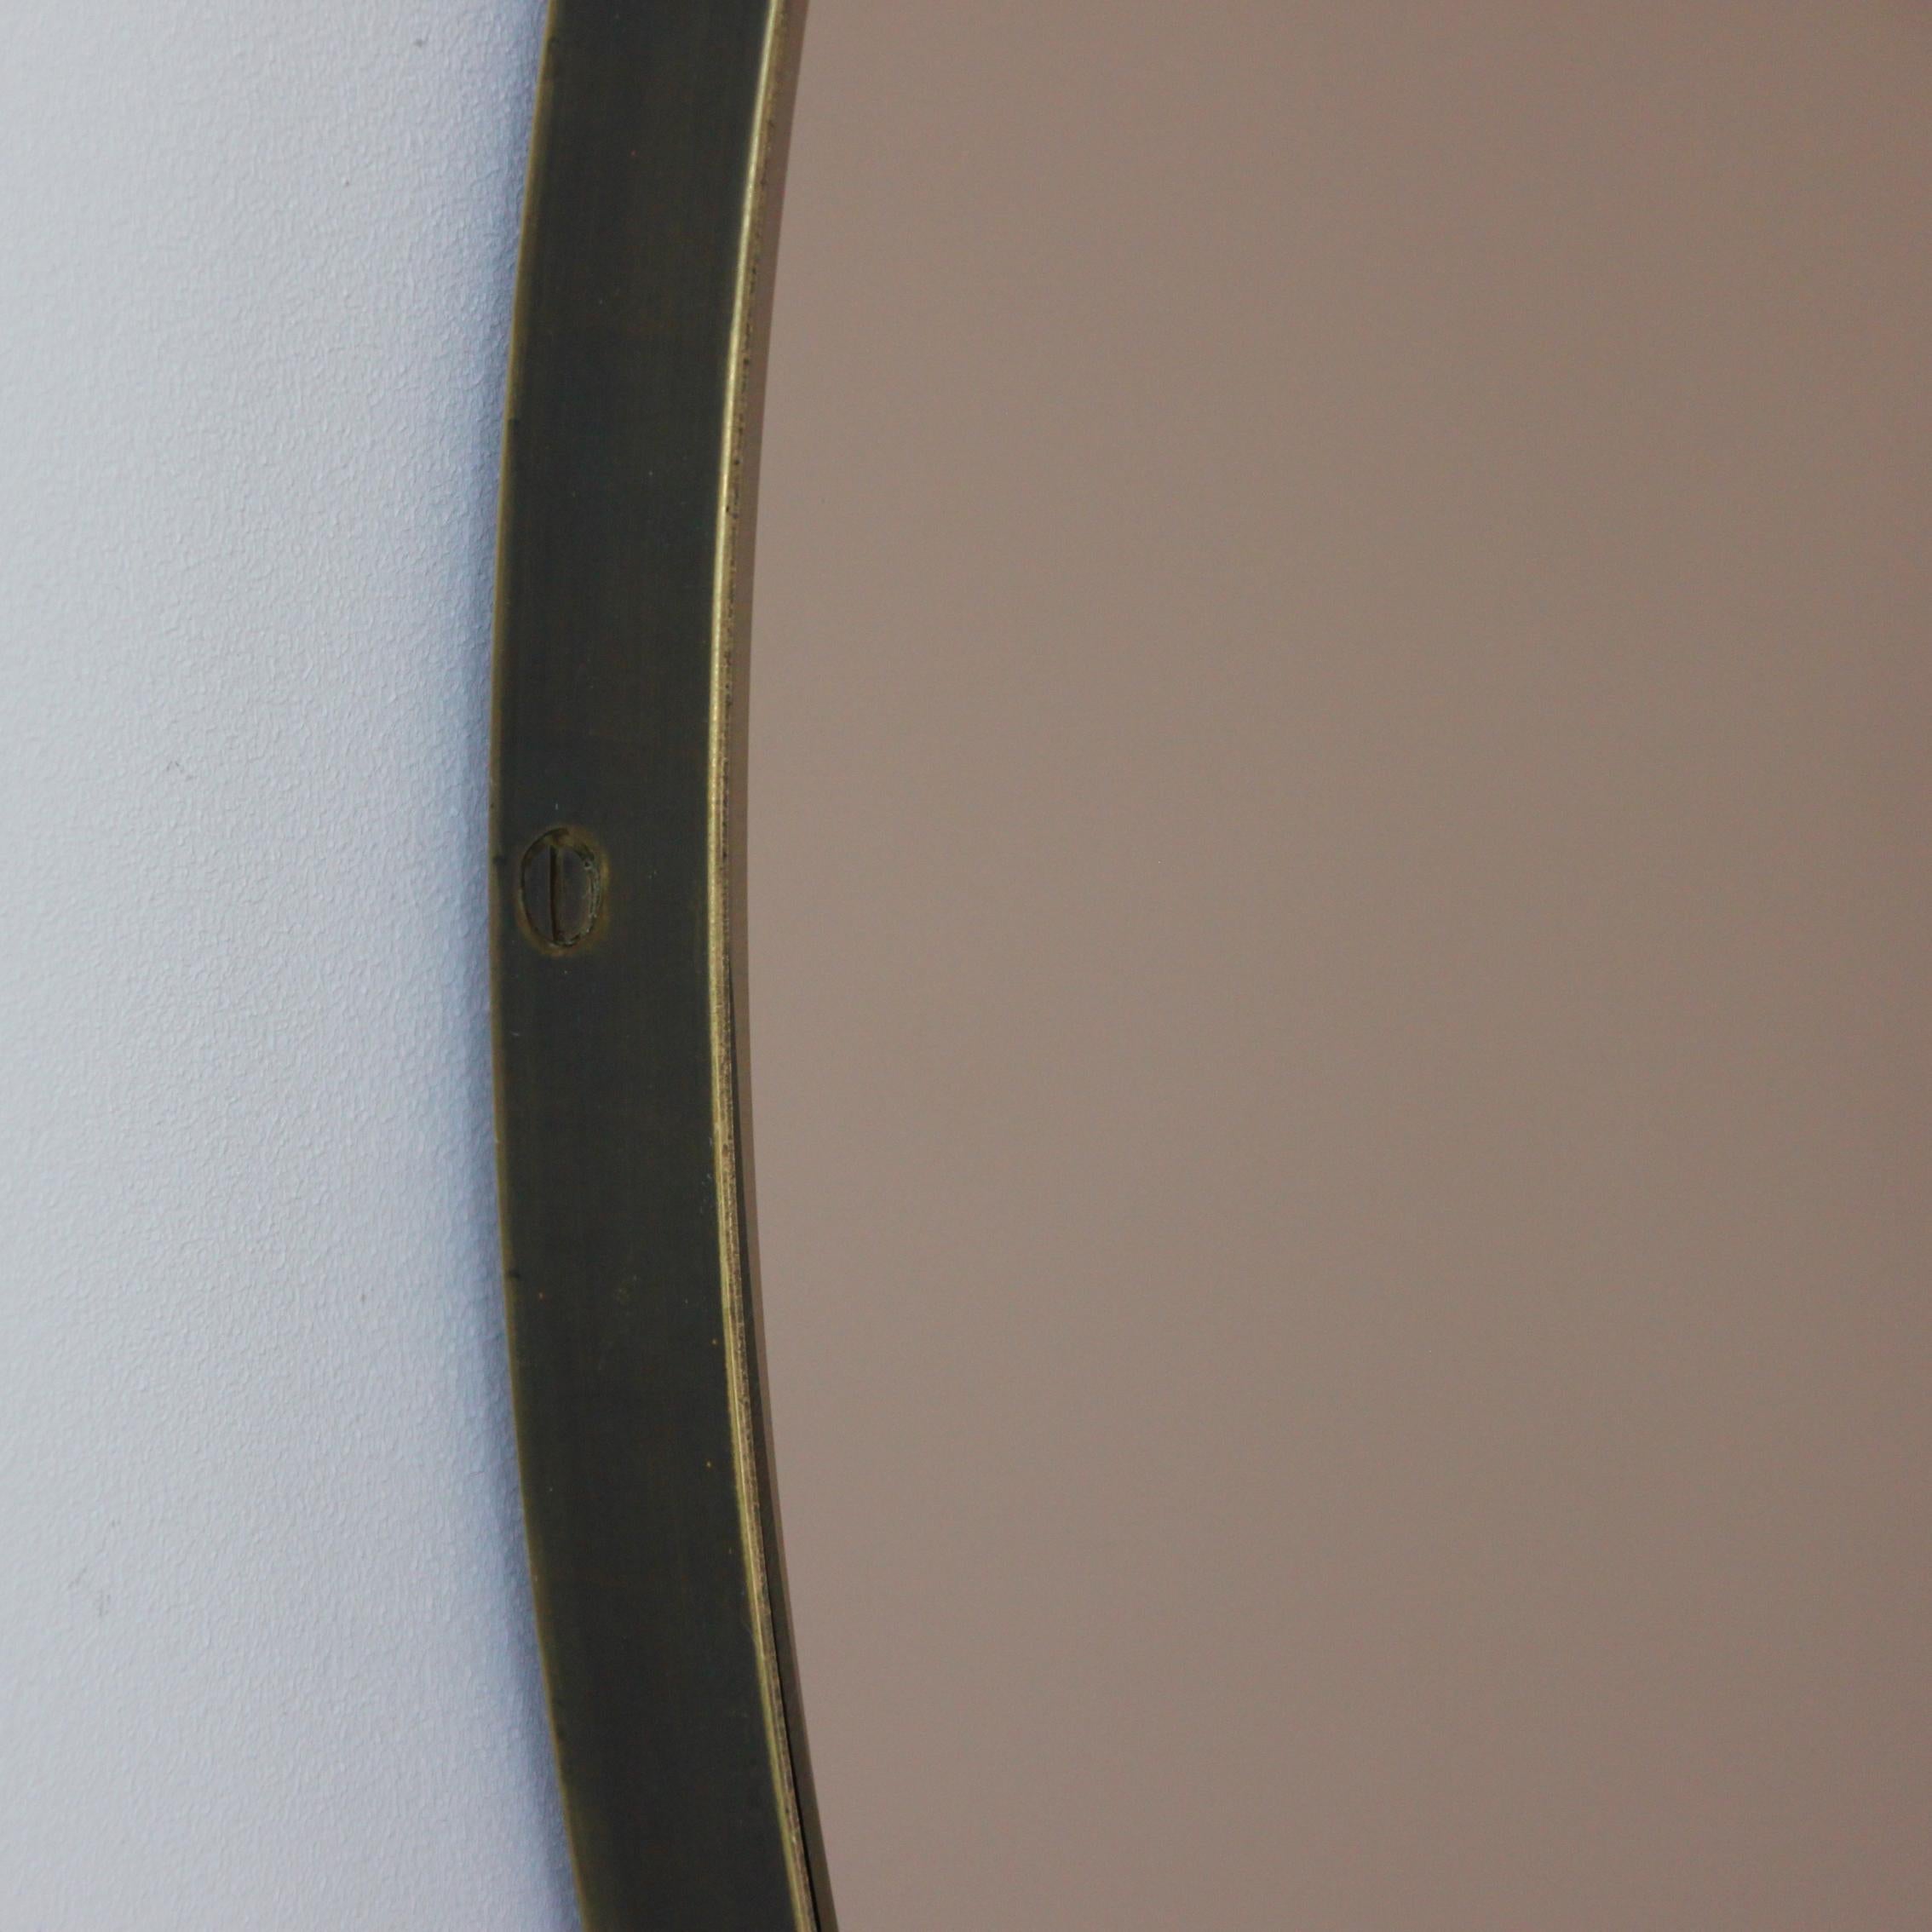 Zeitgenössischer, bronzefarbener Orbis™-Rundspiegel mit einem eleganten Messingrahmen mit bronzefarbener Patina. Entworfen und handgefertigt in London, UK.

Die mittelgroßen, großen und extragroßen Spiegel (60, 80 und 100 cm) sind mit einem